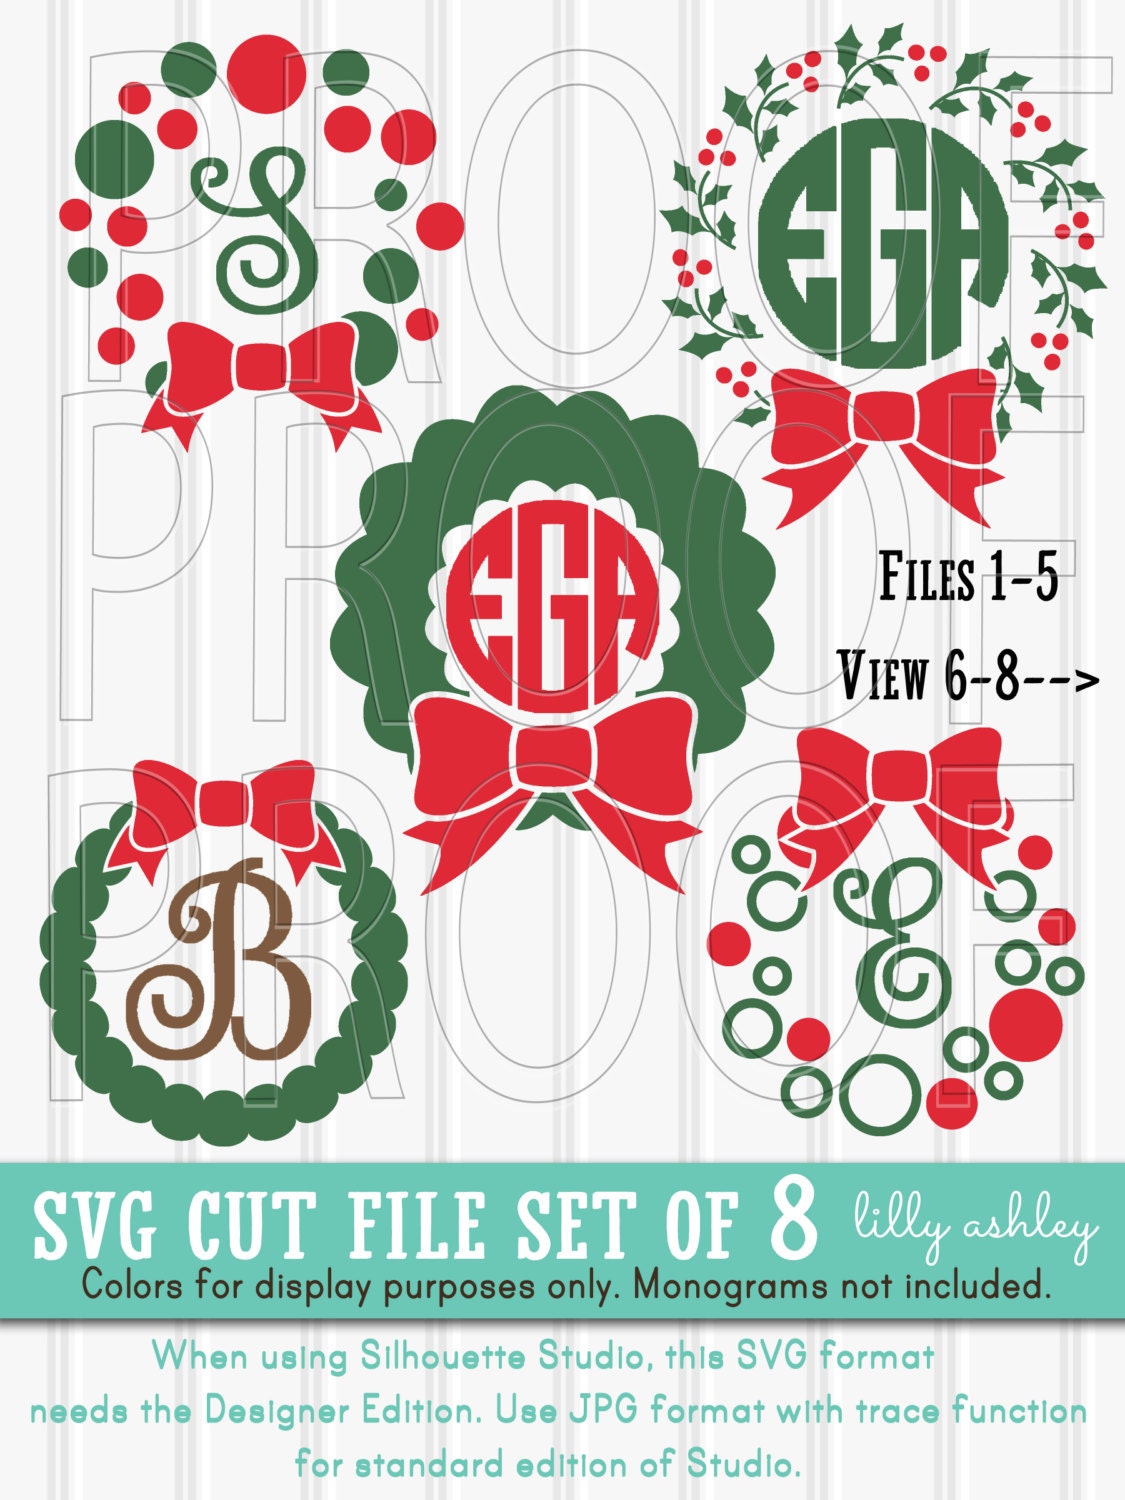 Download Monogram SVG Files Set of 8 cut files includes svg/png/jpg